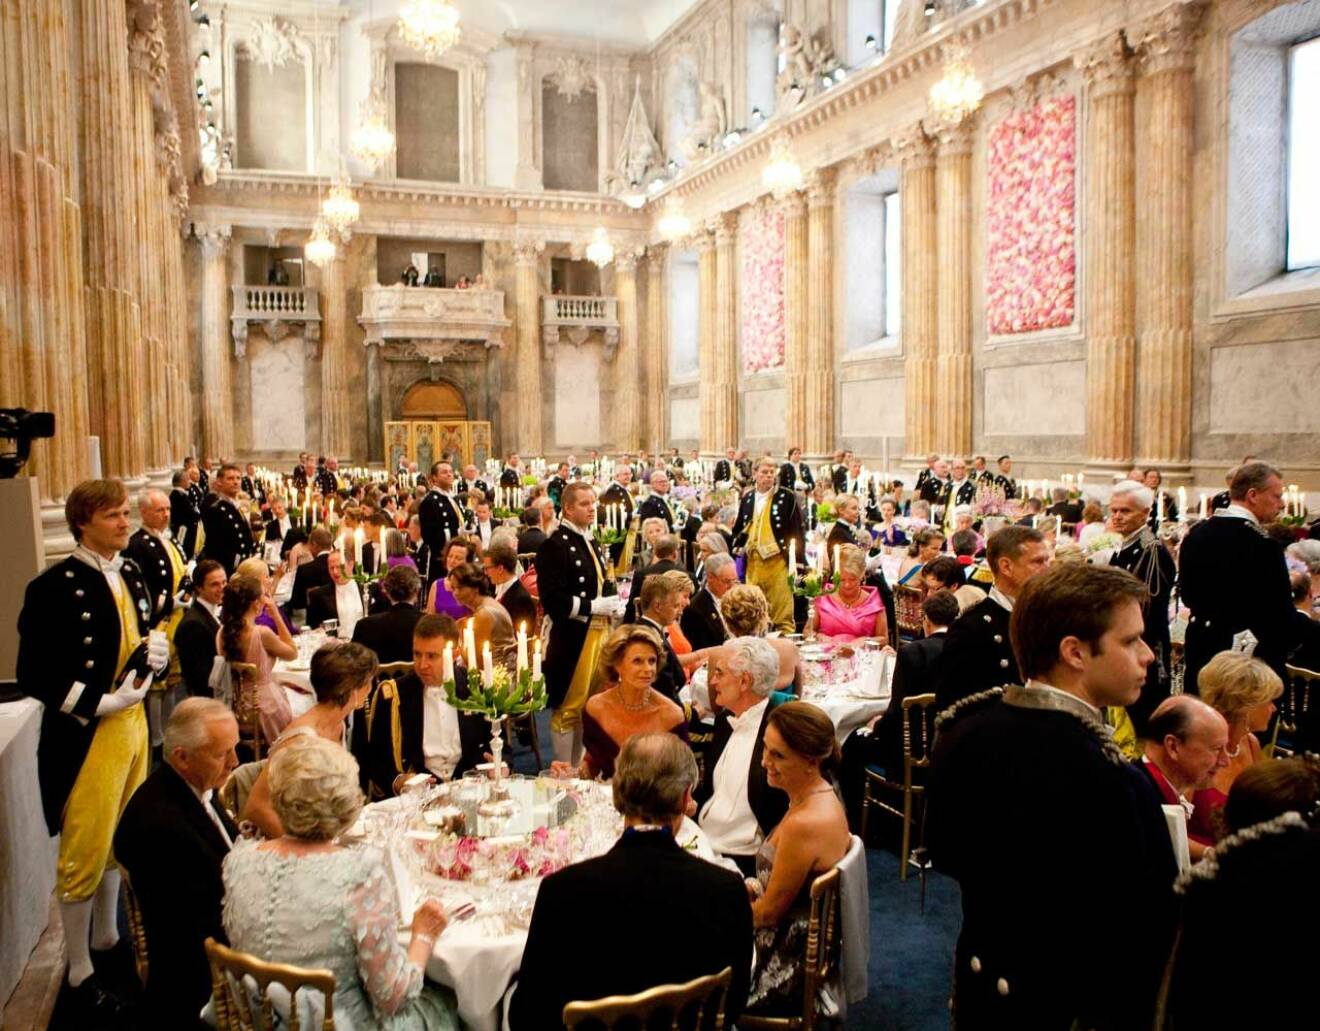 Rikssalen under kronprinsessan Victorias och prins Daniels bröllopsmiddag den 19 juni 2010.